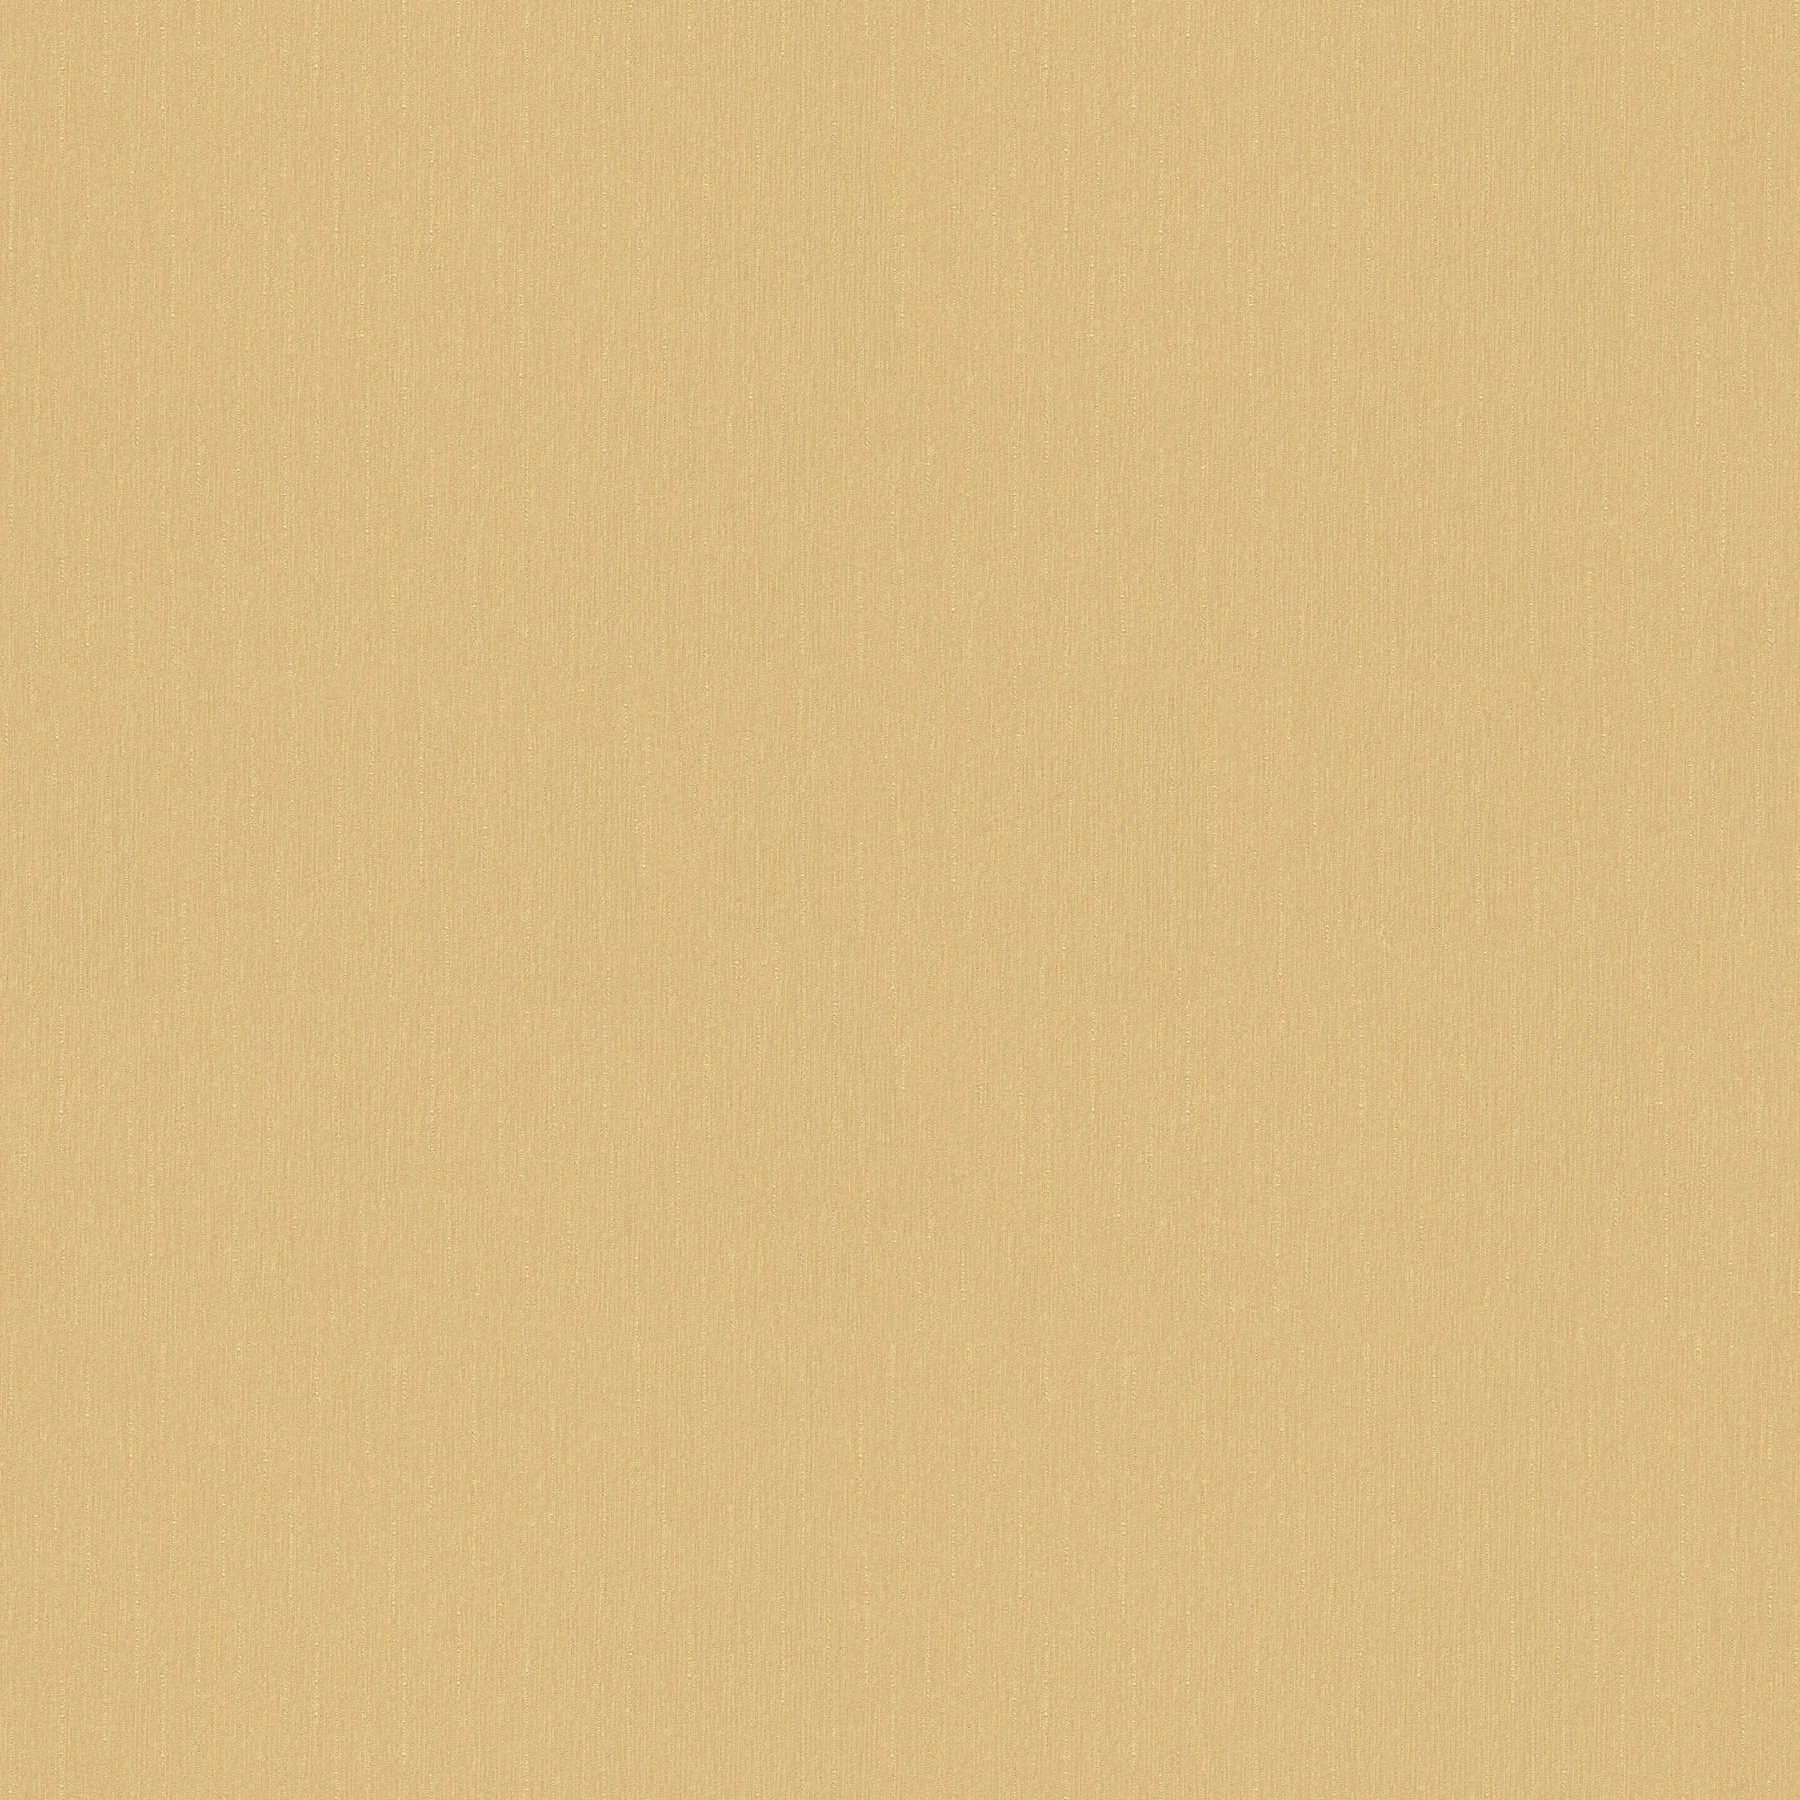 Papier peint uni doré avec fins fils scintillants - or, crème
